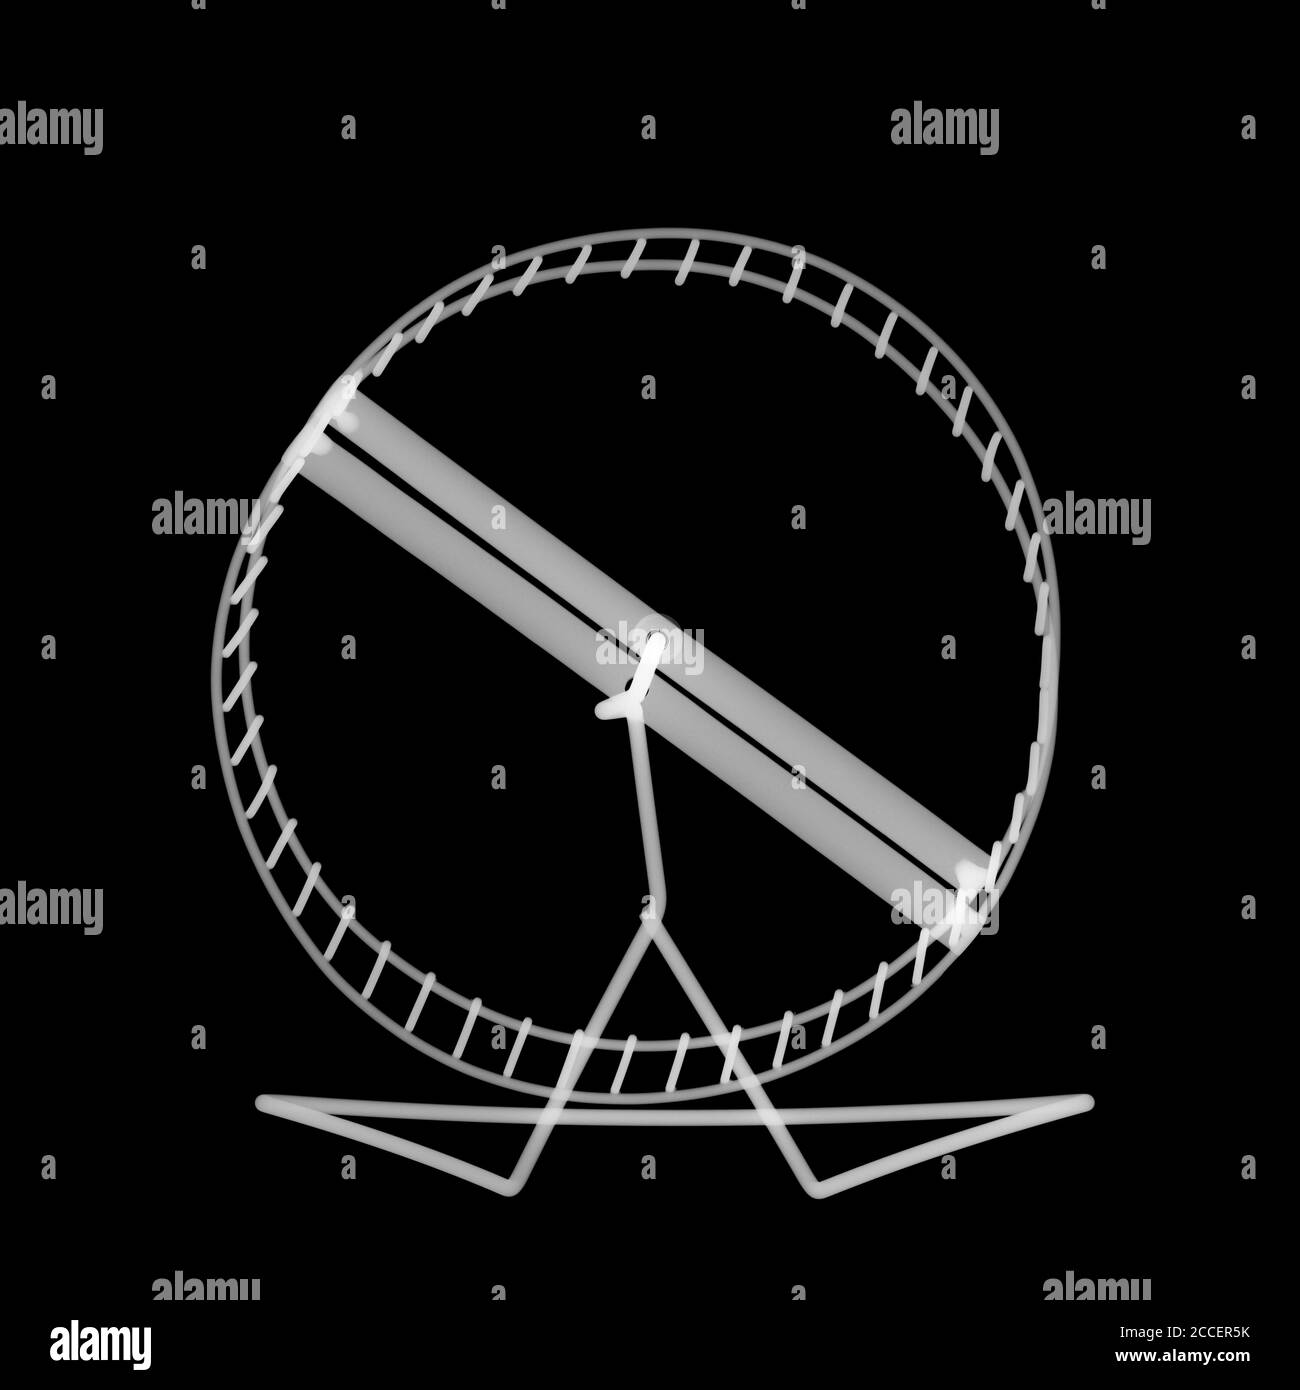 Hamster wheel, X-ray Stock Photo